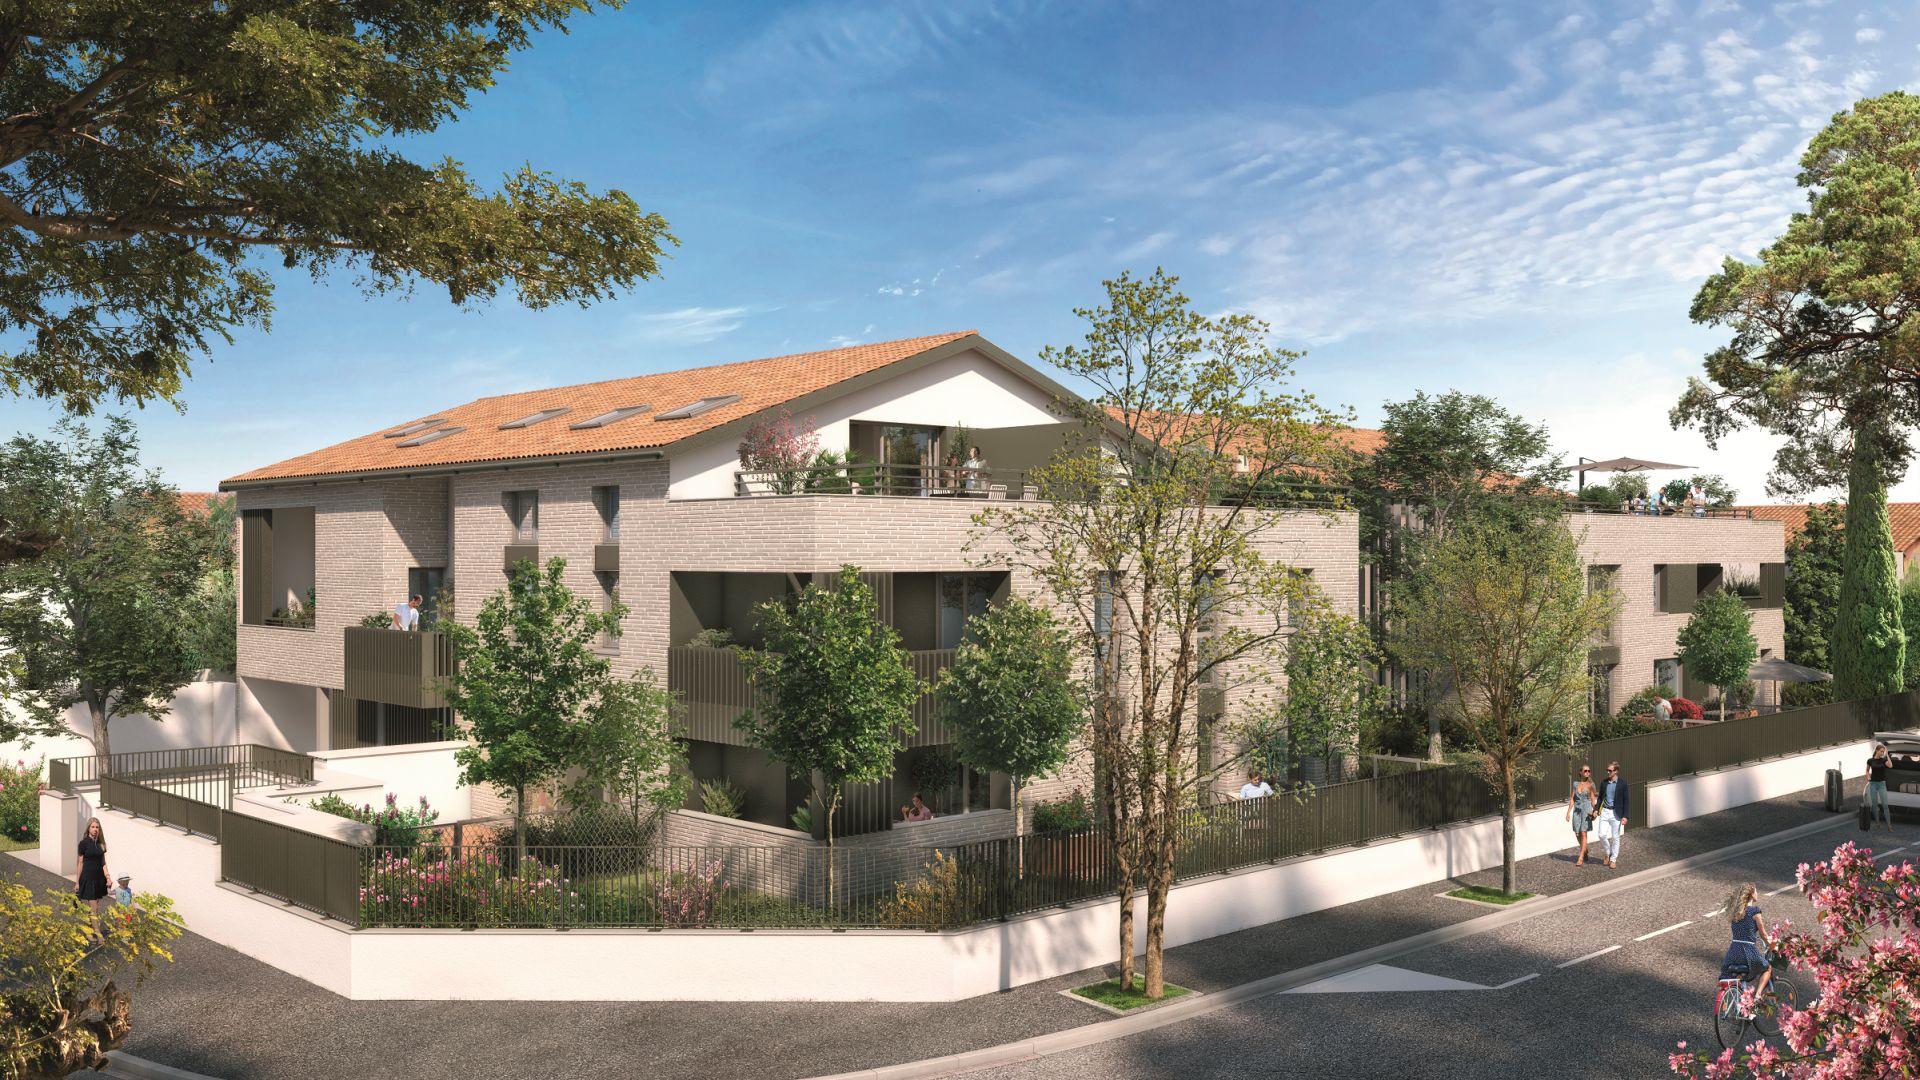 Greencity Immobilier - Résidence Villa Roméo - achat appartements neufs du T2 au T4 duplex - Toulouse - Rangueil - 31400